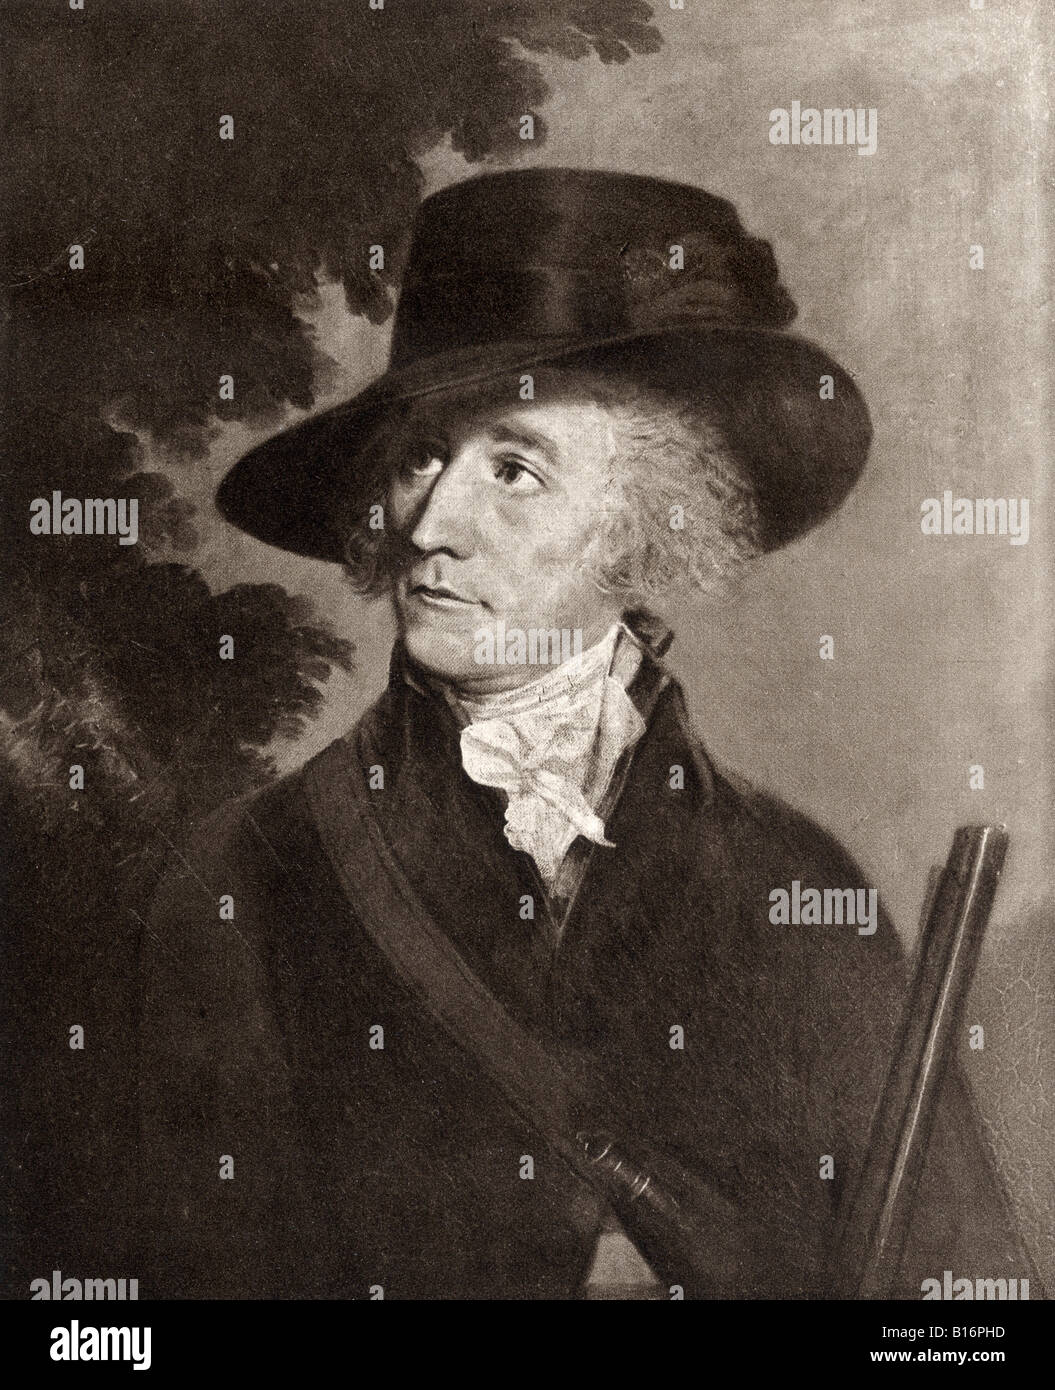 Peter Anker, 1744 - 1832. Norwegischer Künstler, Sammler und Generalgouverneur von Tranquebar. Aus dem Buch Eidsvoll 1814, erschienen 1914. Stockfoto